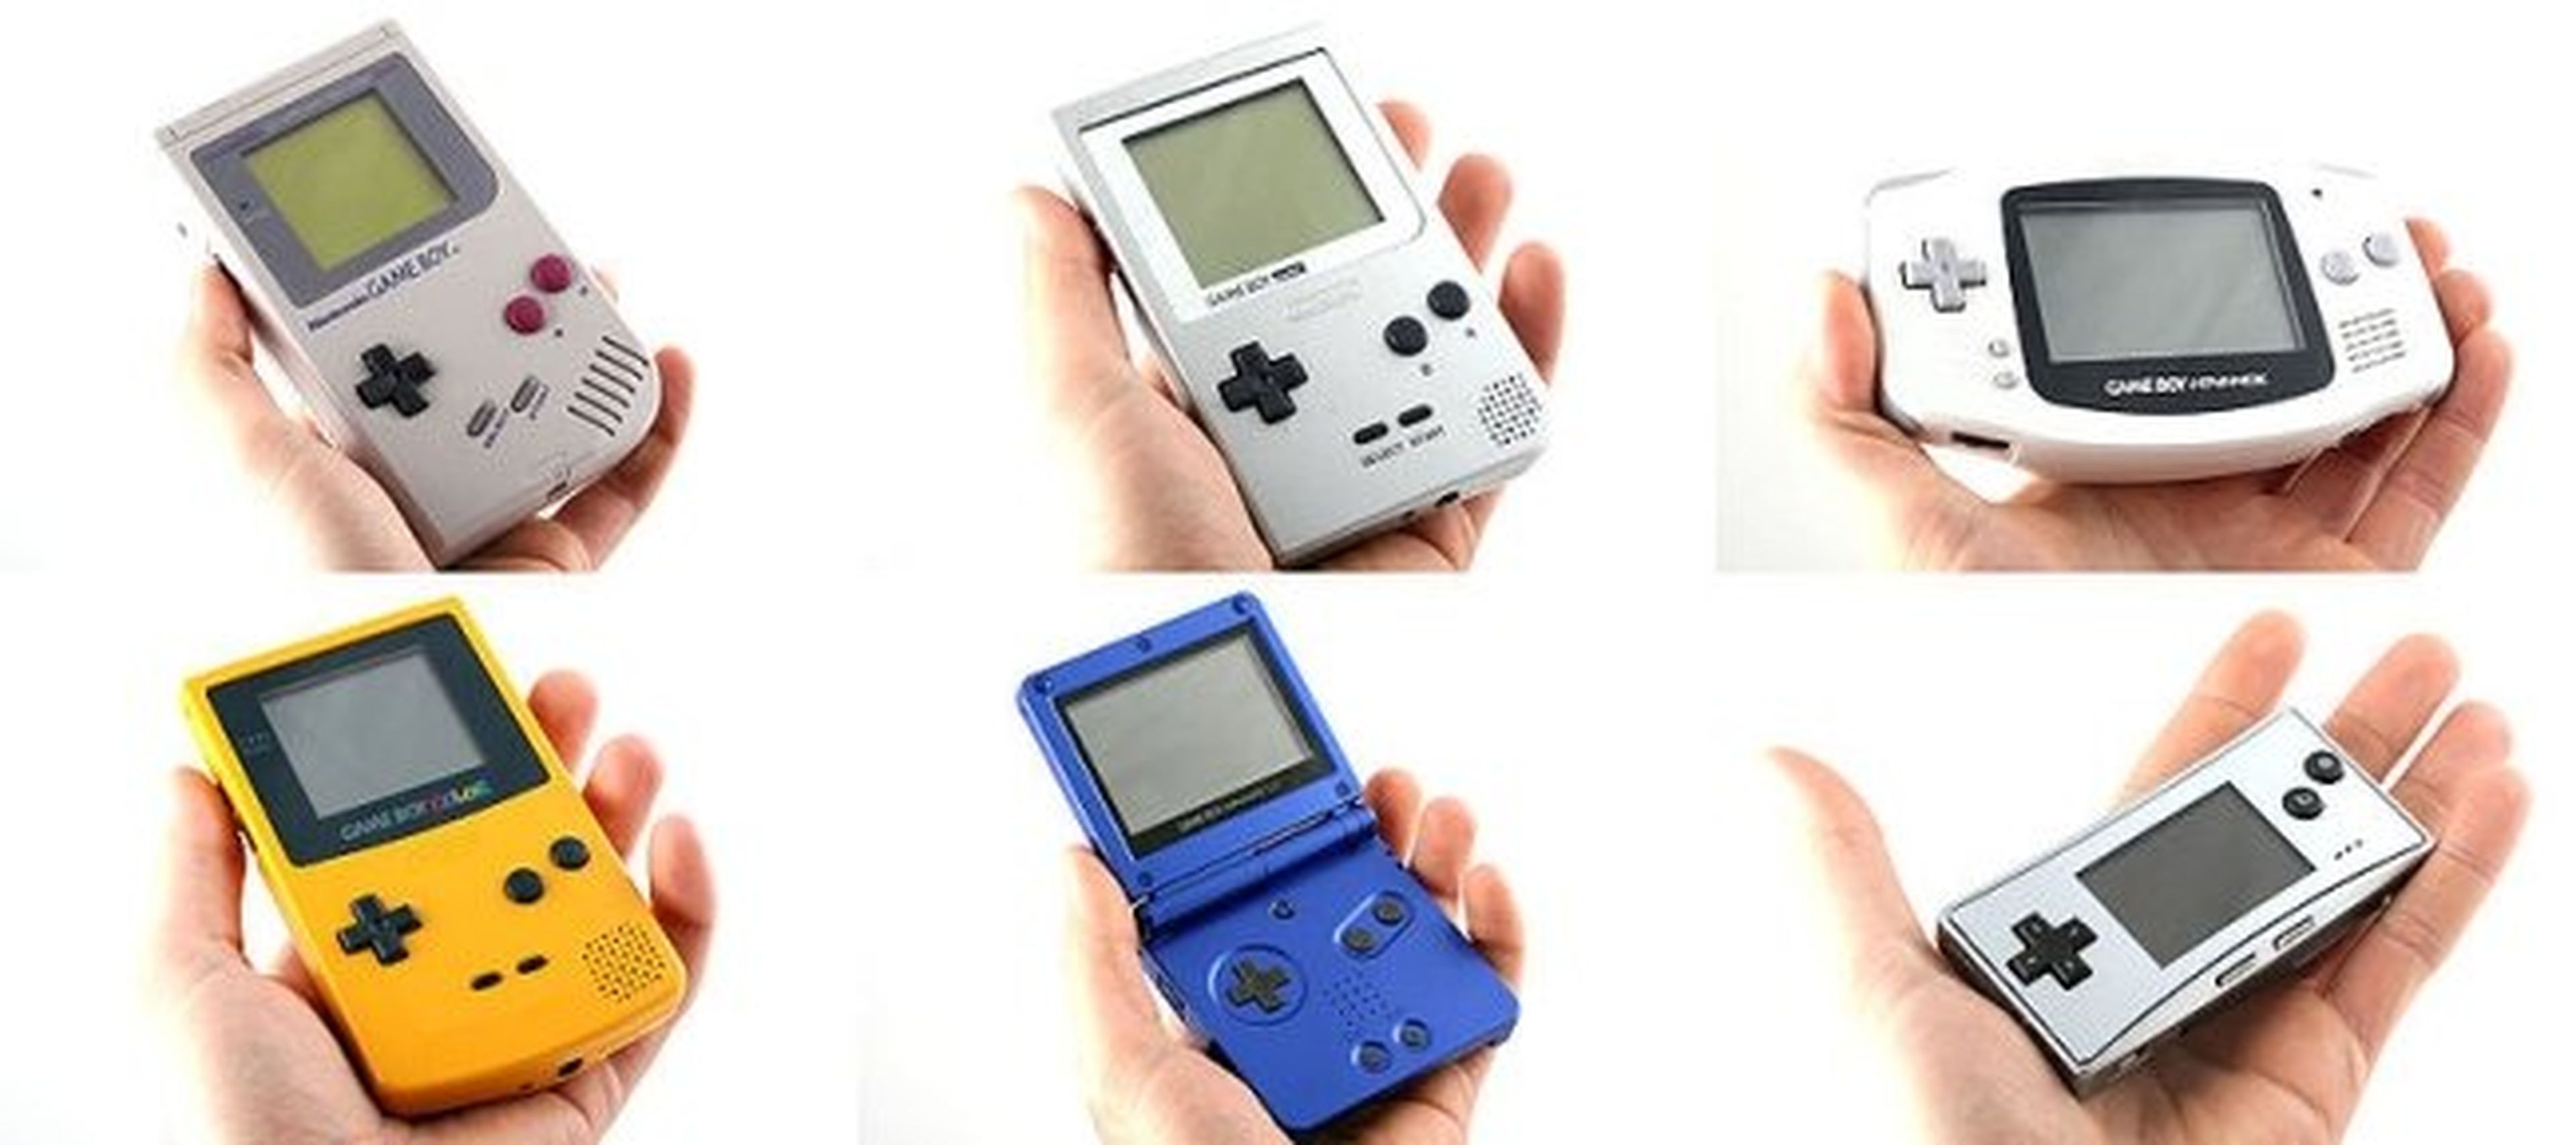 Nintendo Game Boy cumple 25 años